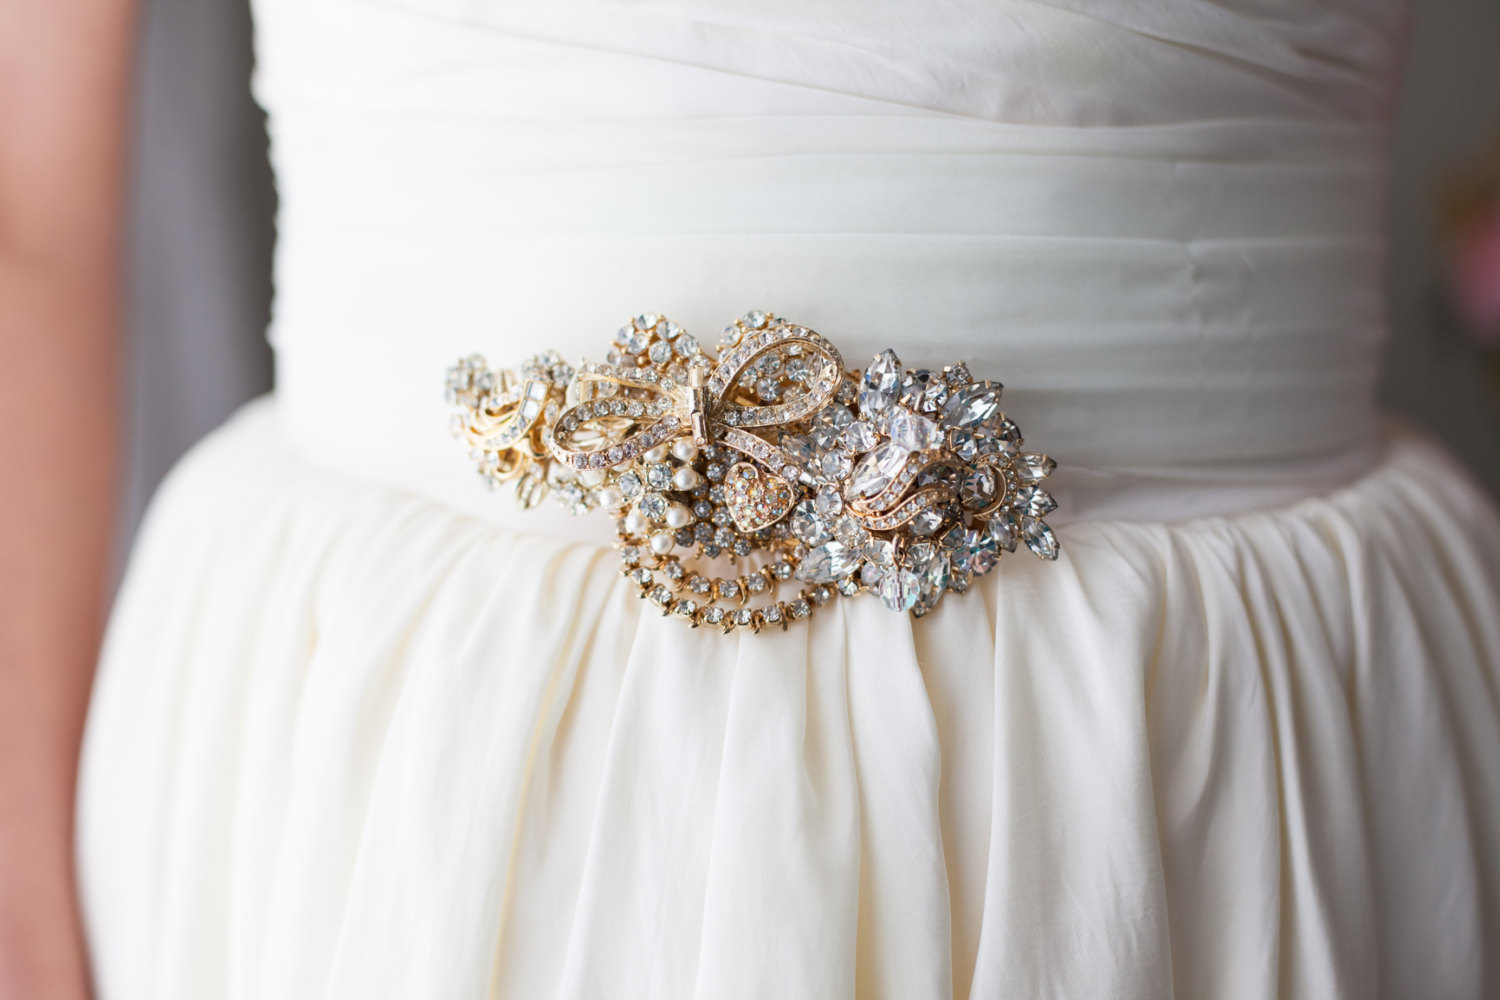 Brooch Dress Sash | http://emmalinebride.com/bride/brooch-dress-sash/